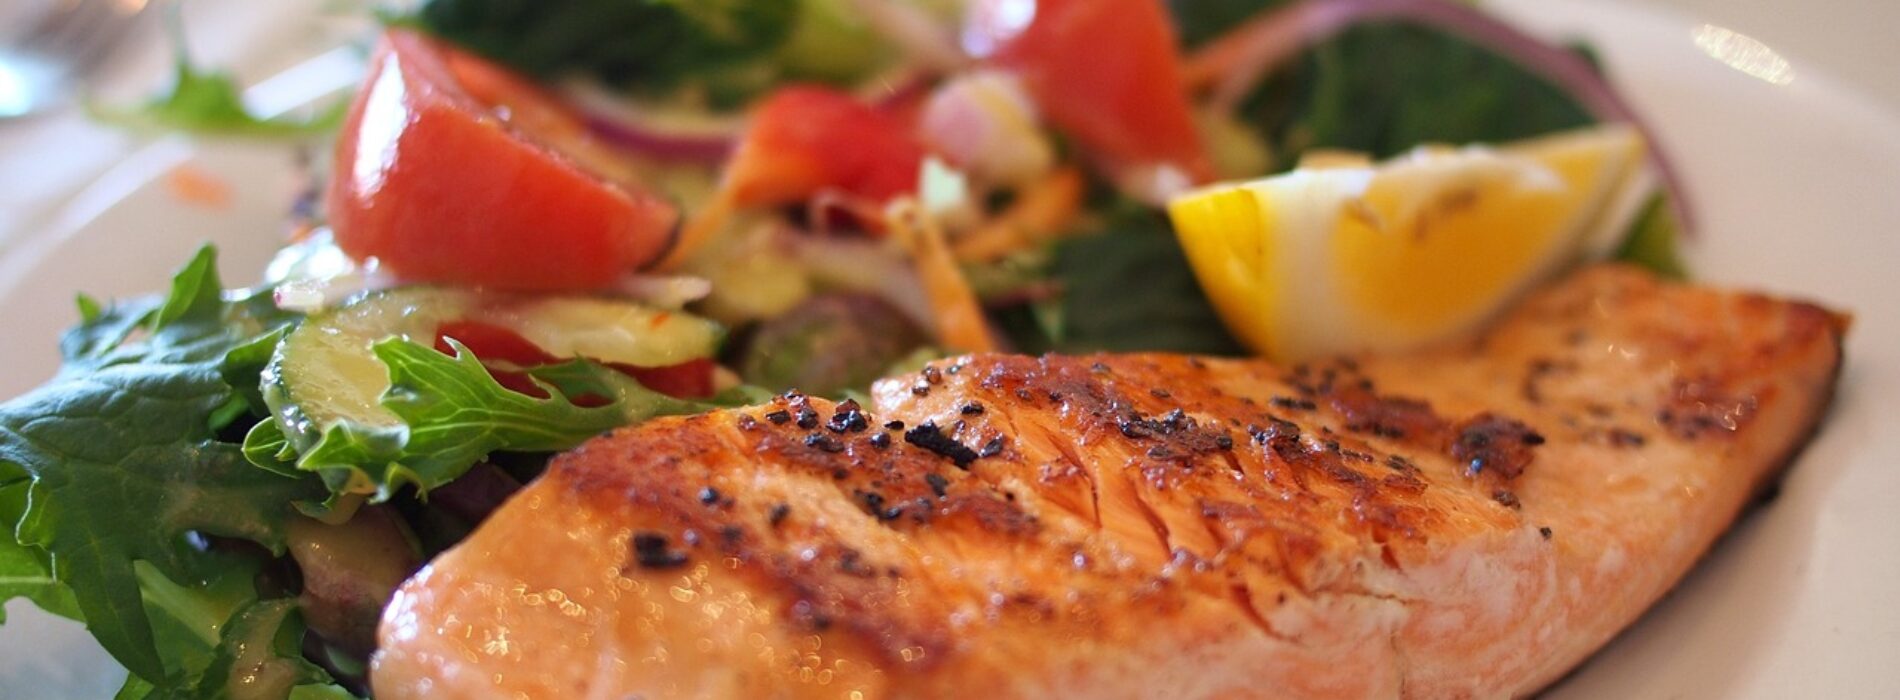 Nawet 80 proc. ludzi nie przyjmuje odpowiednich dawek kwasów omega-3. Główny powód to zbyt mało tłustych ryb w diecie i brak suplementacji